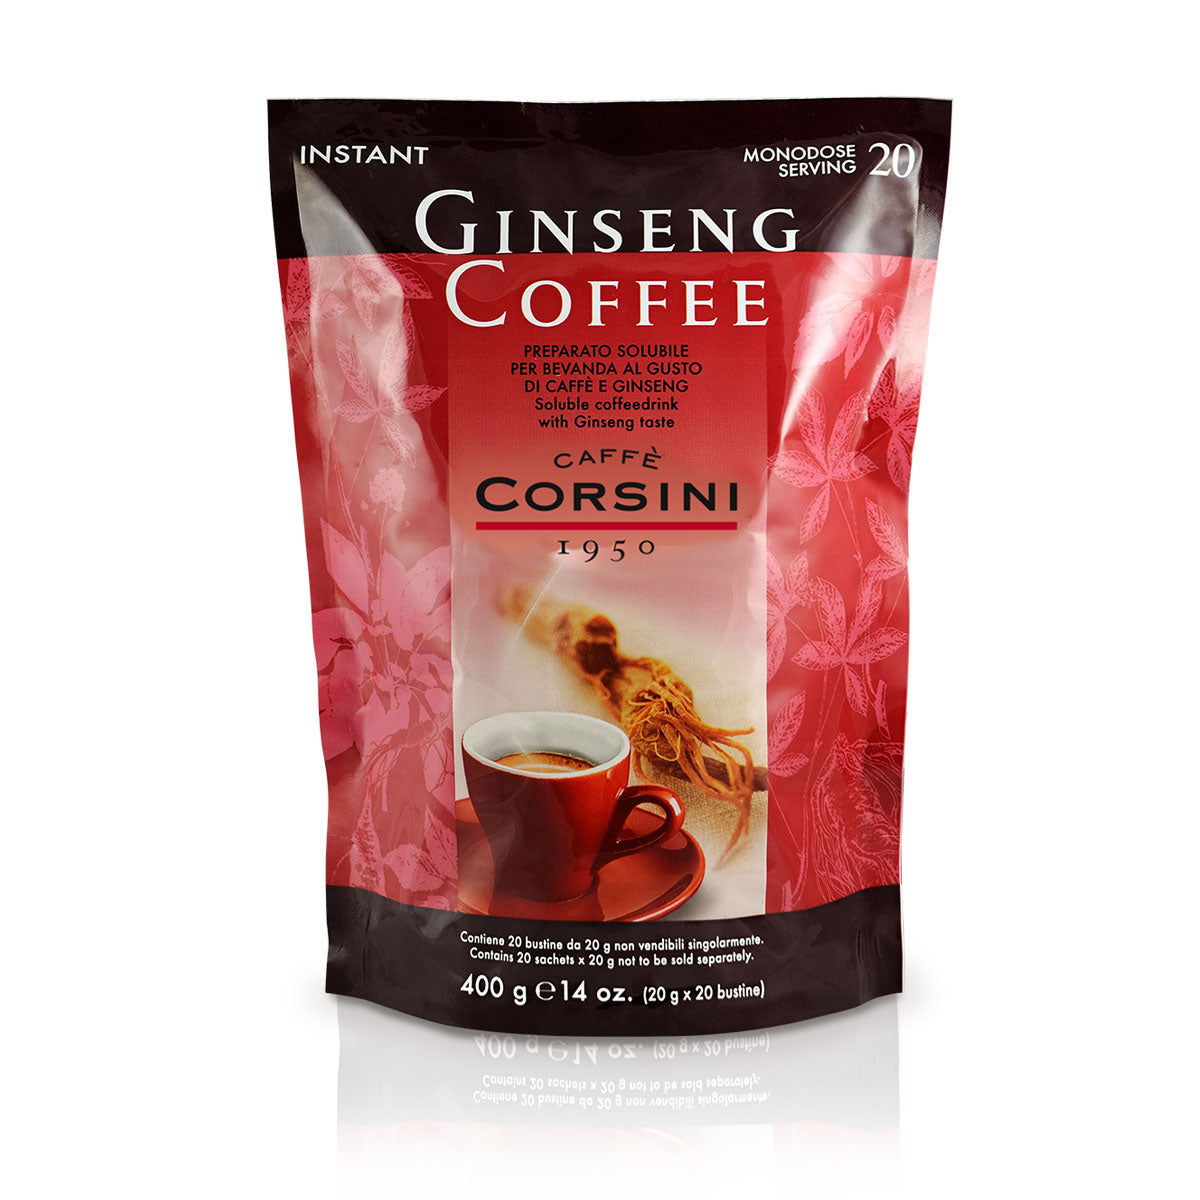 Ginseng coffee | 20 bustine monodose da 20 grammi ciascuna | Cartone con 20 confezioni